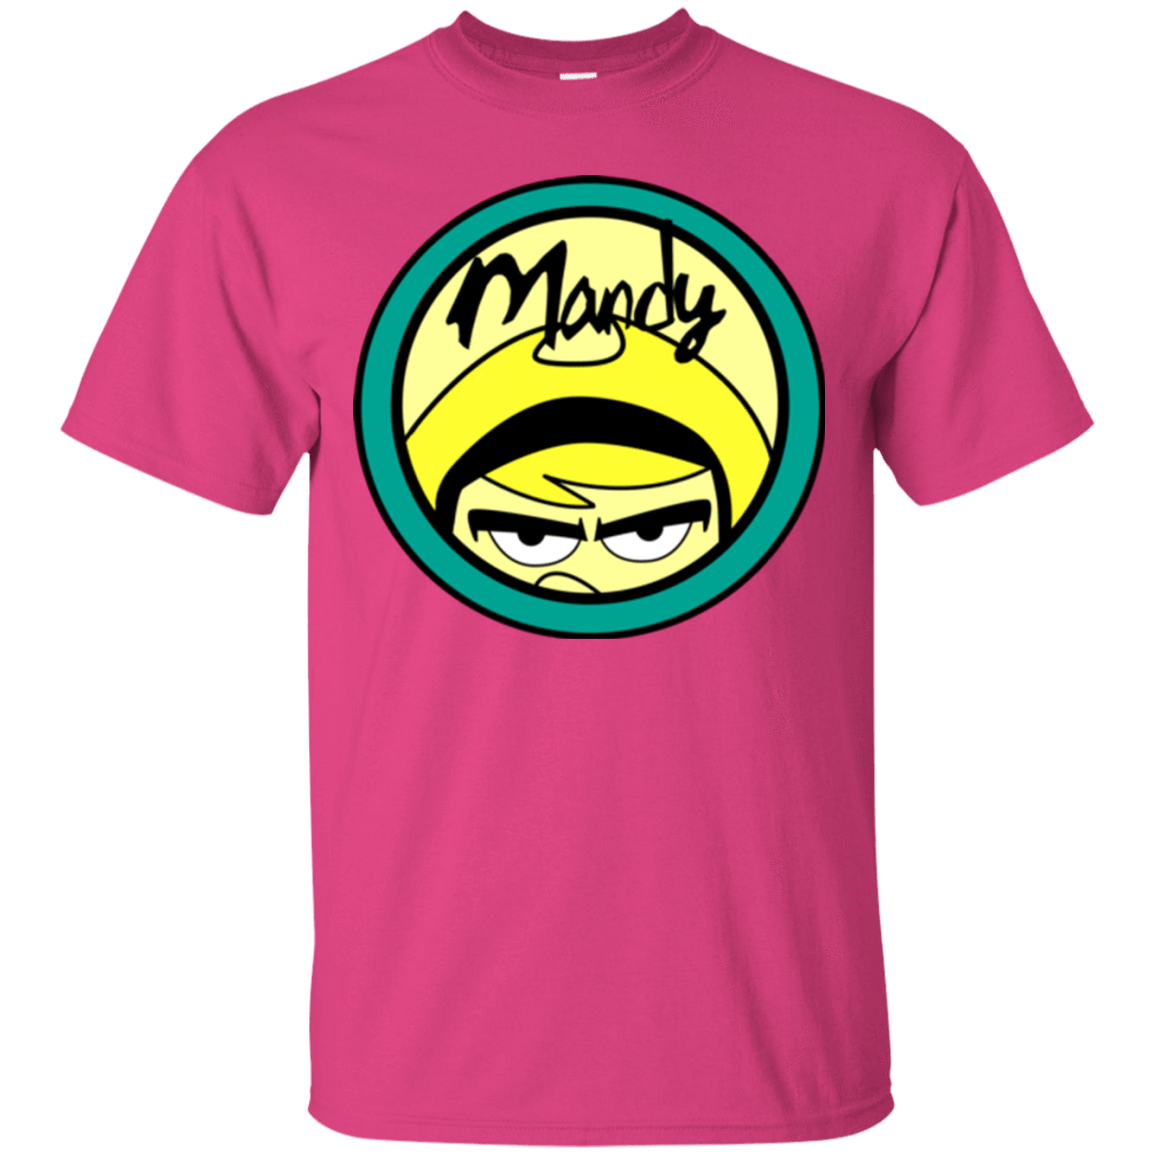 Mandy T-Shirt – Pop Up